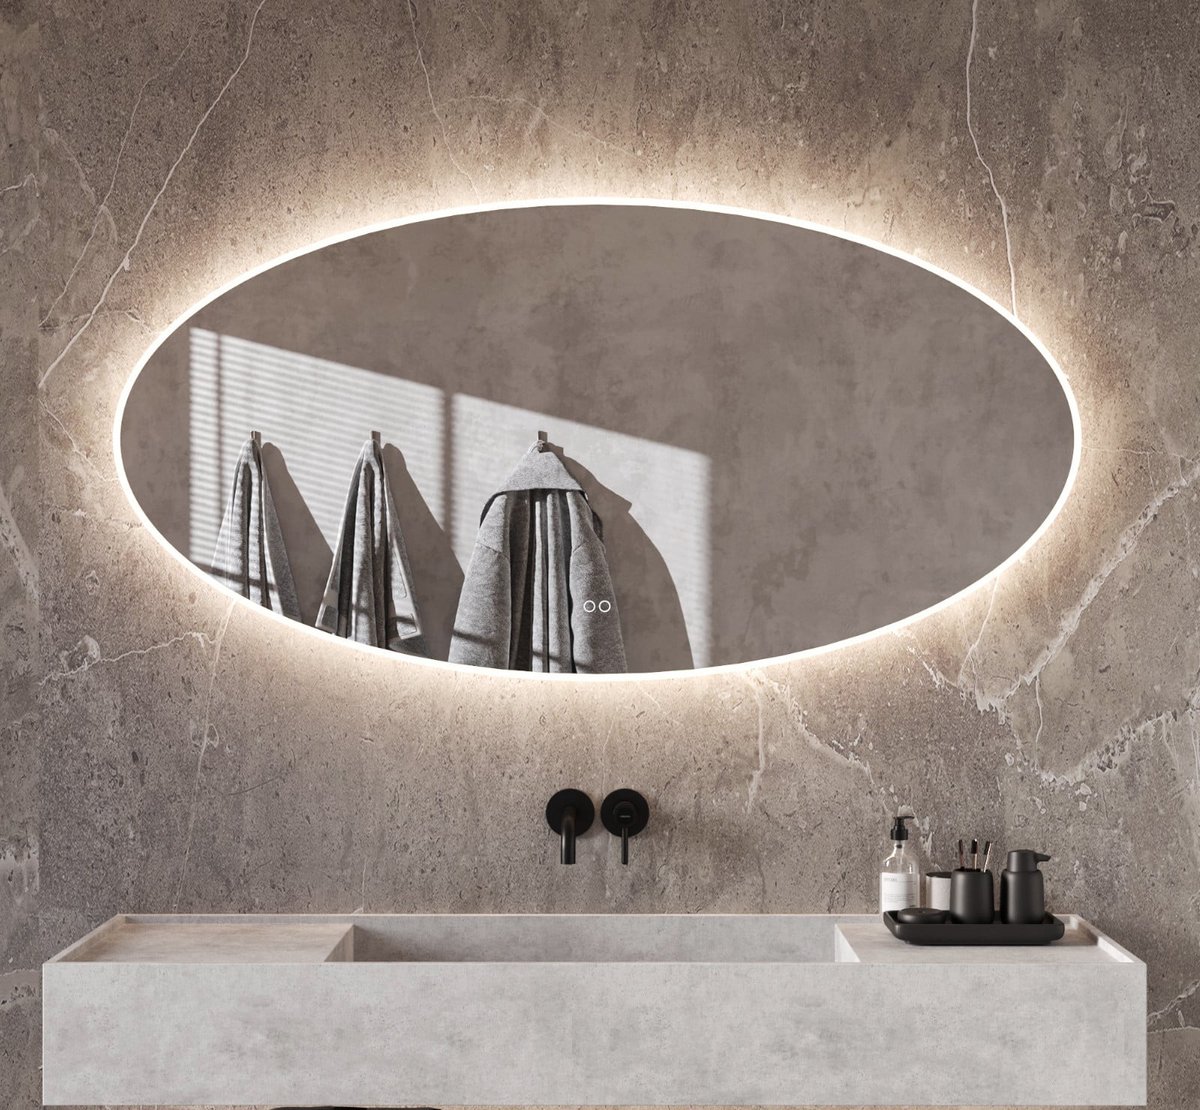 Ovalen badkamerspiegel met directe en indirecte verlichting, verwarming, instelbare lichtkleur en dimfunctie 140×70 cm